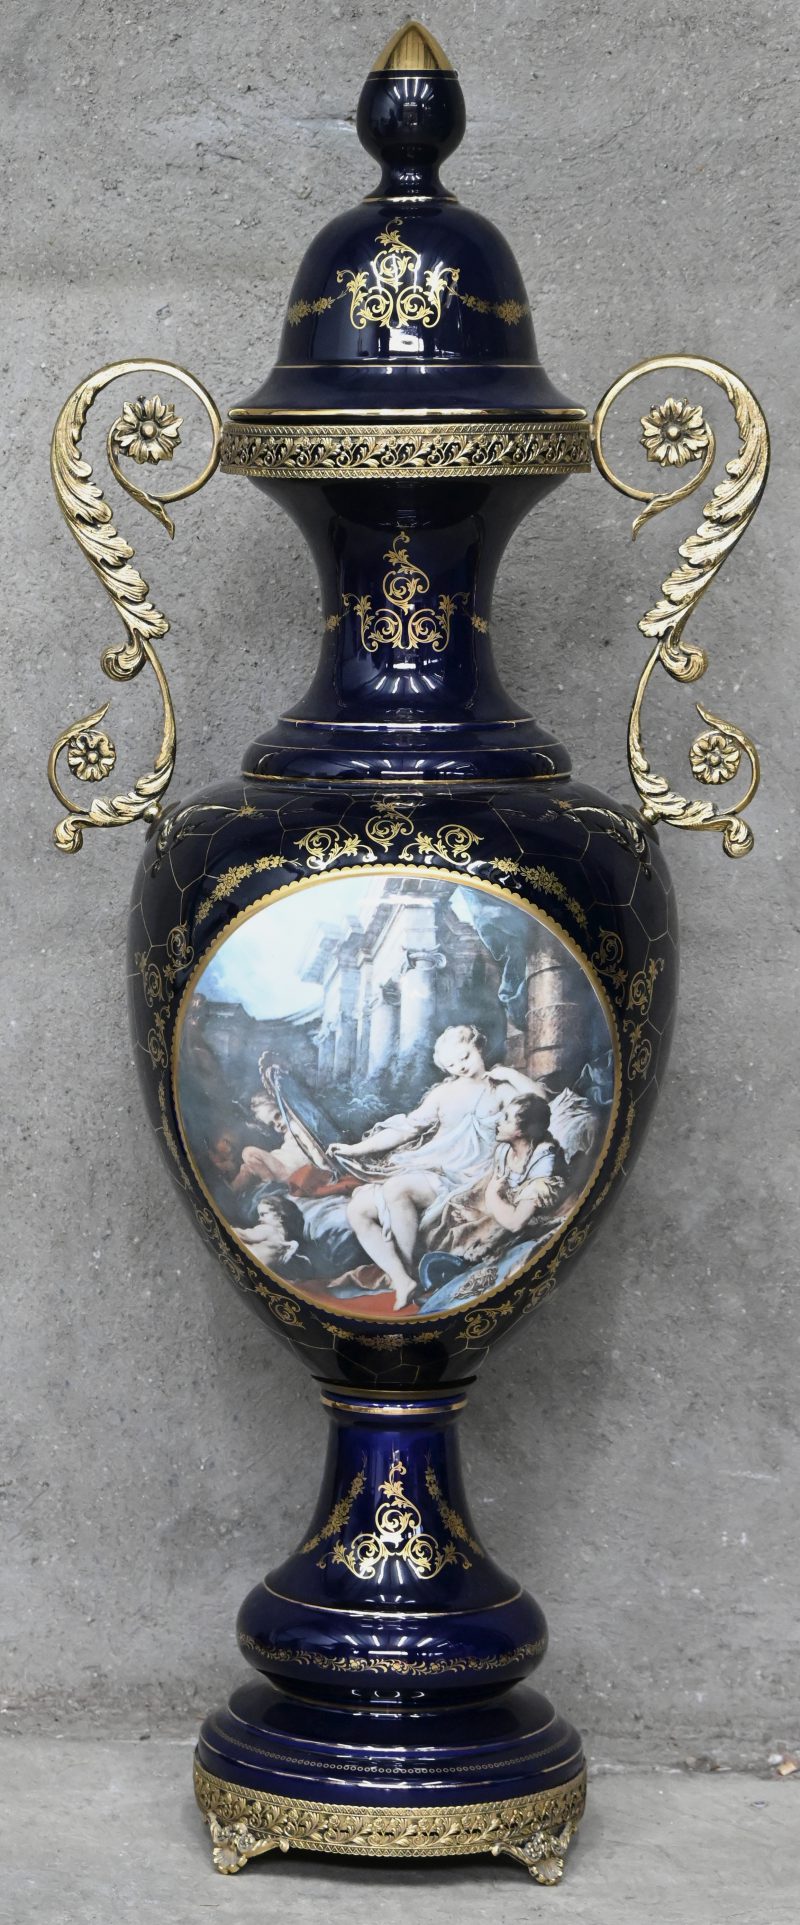 Een kobalt blauwe cassolette met vergulde accenten, messingen monturen en romantisch decor. Naar Sèvres.